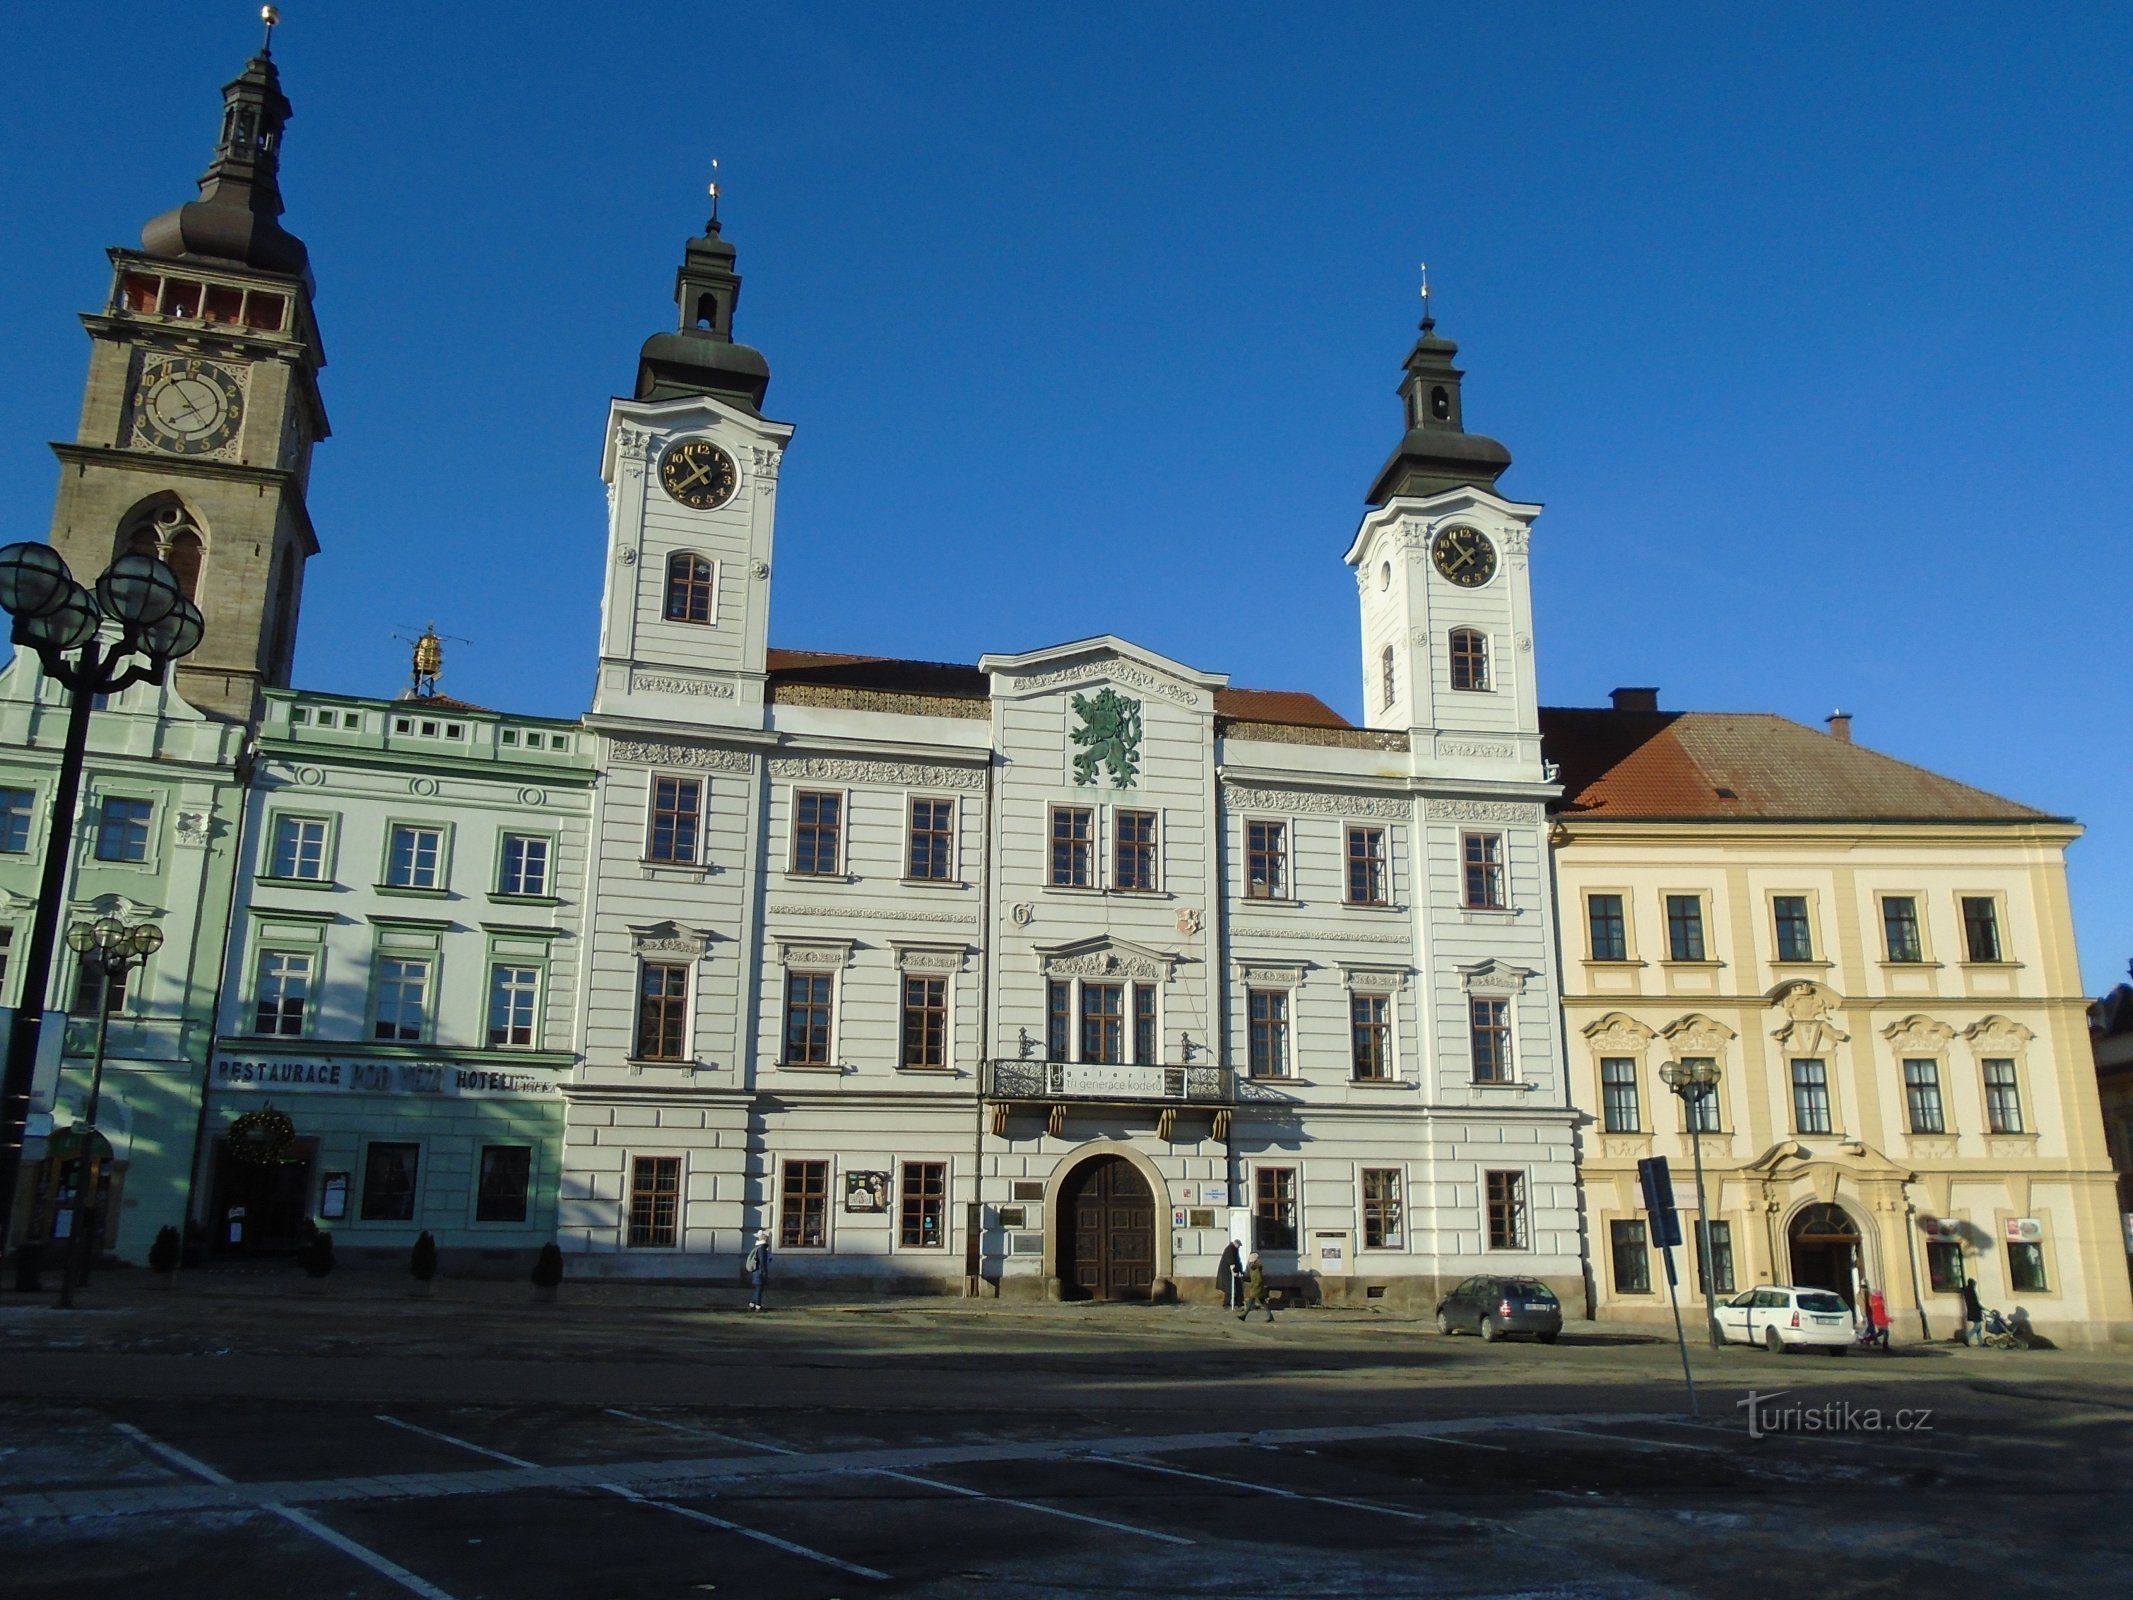 Velké náměstí No. 1 (Hradec Králové, 10.12.2017 oktober XNUMX)